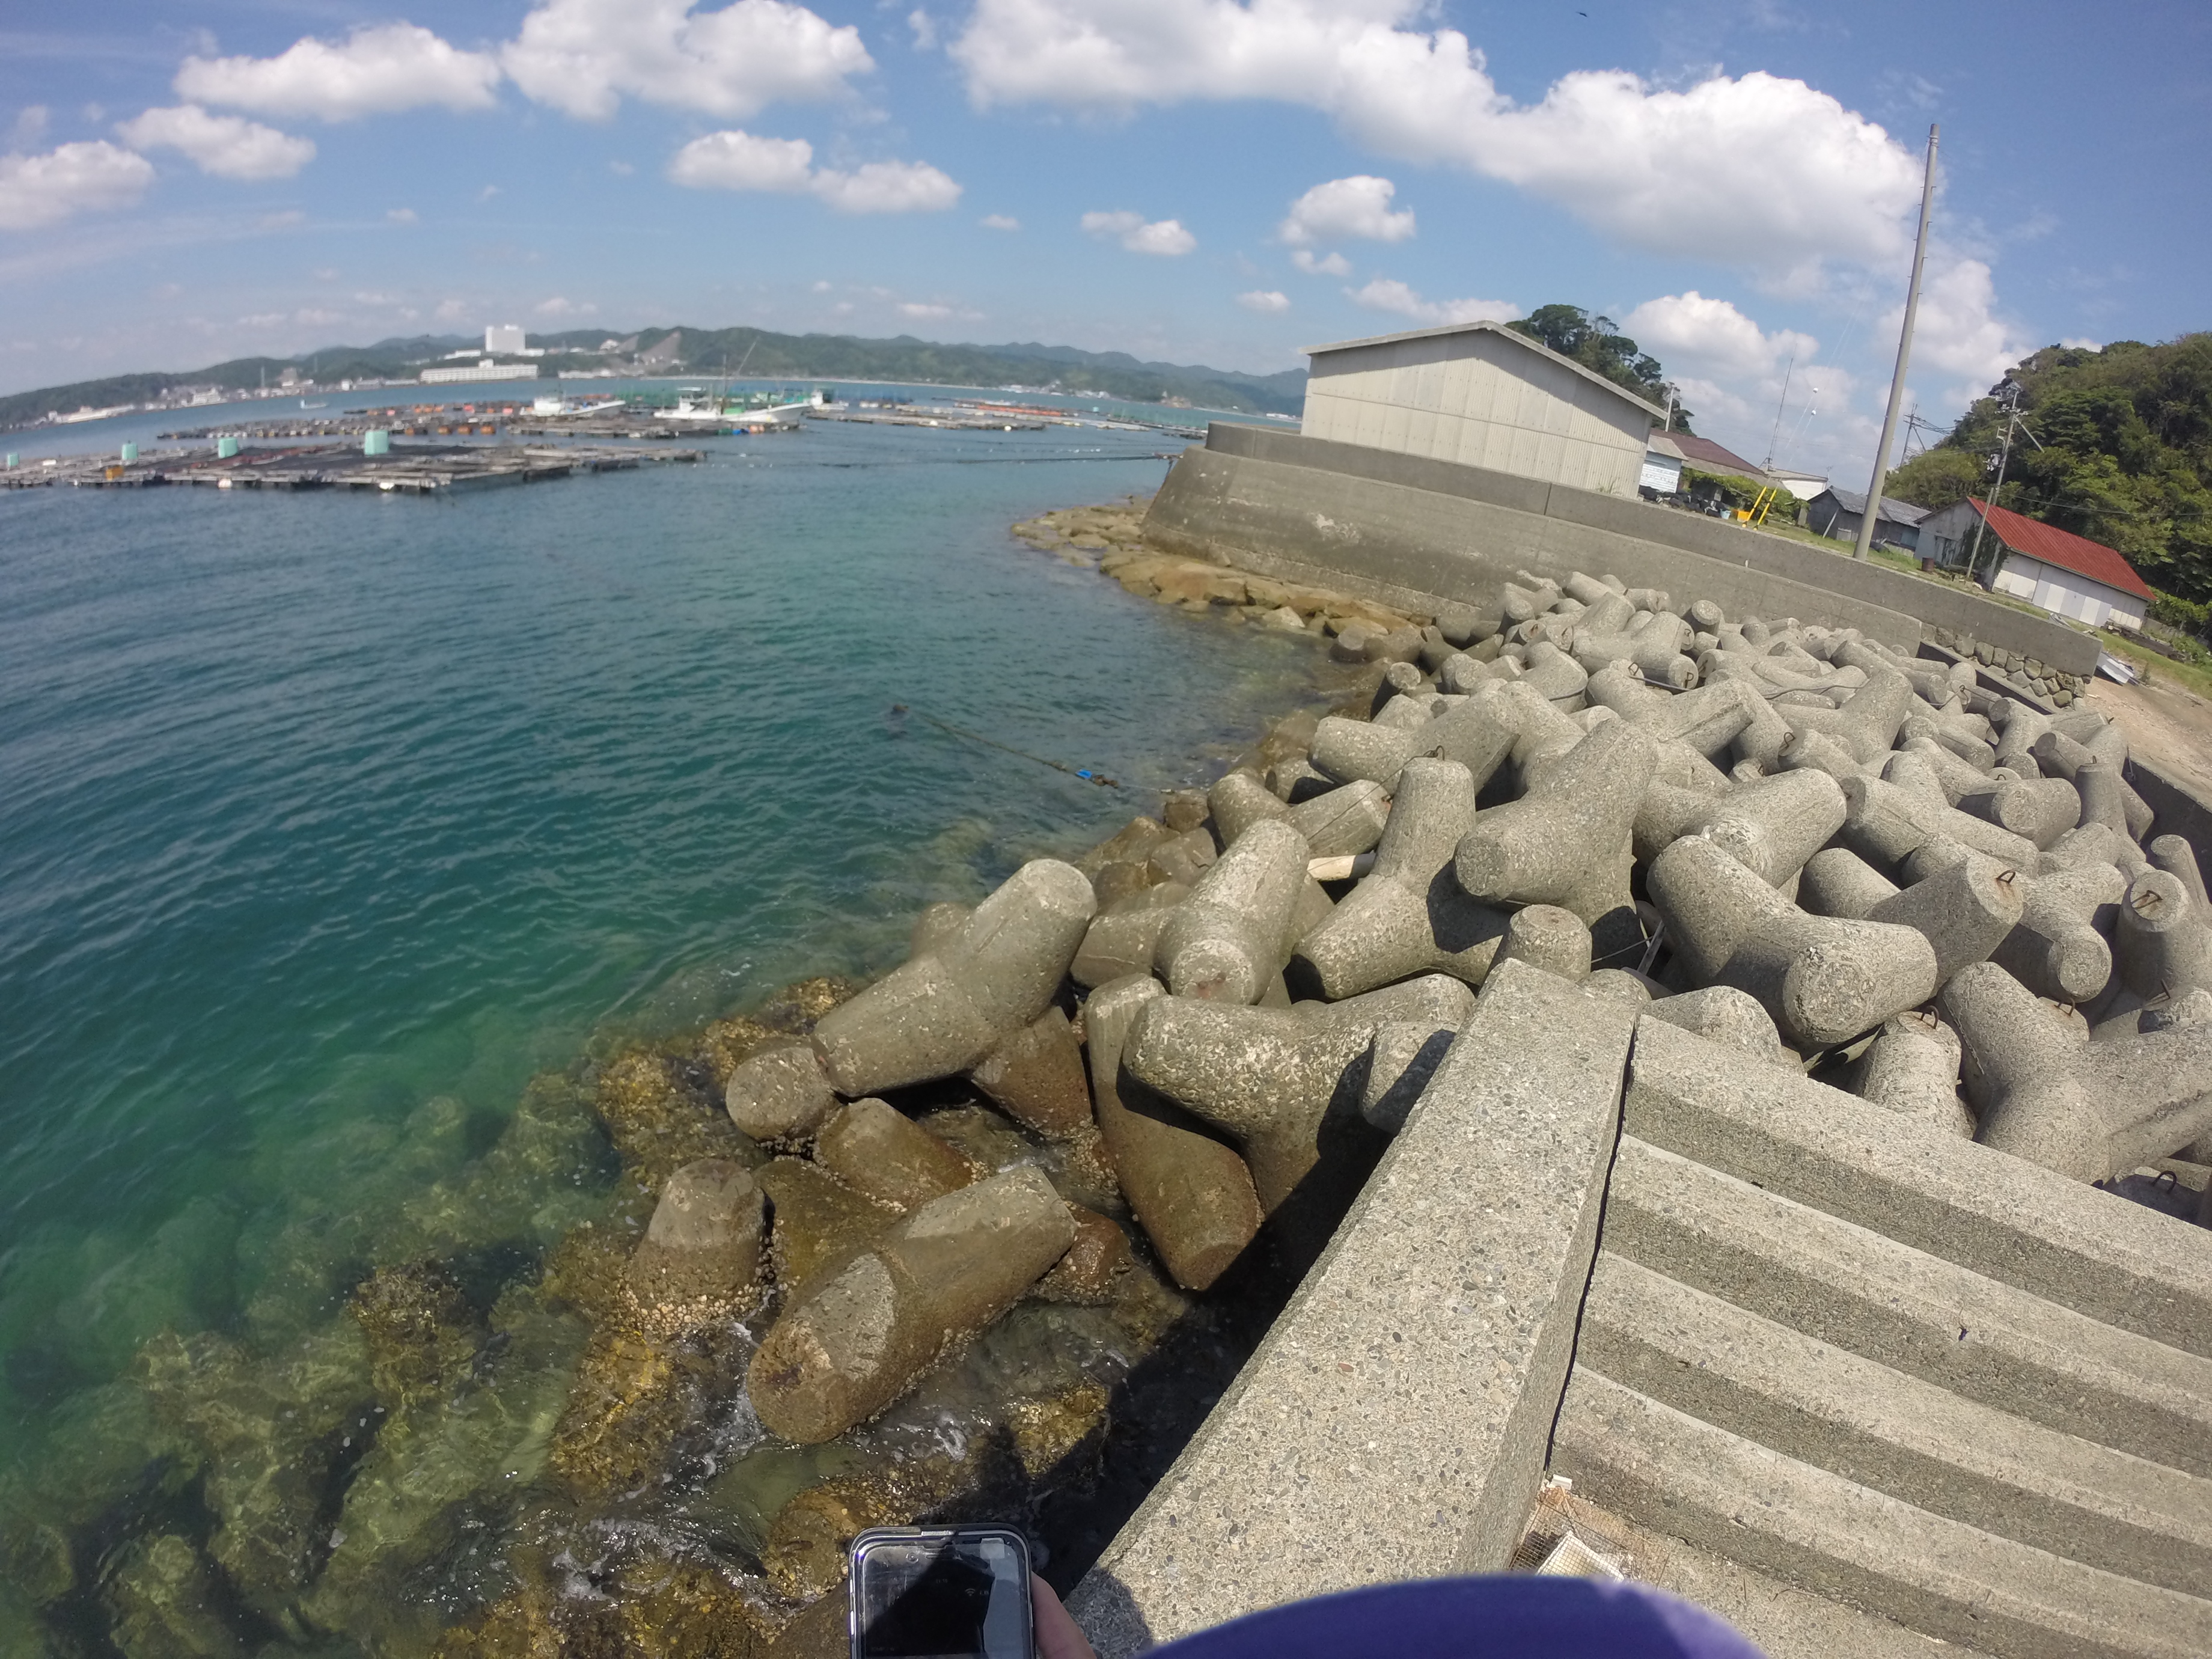 エギングとサビキにオススメのポイント旧大島港の釣り場紹介、和歌山南紀串本大島の静かな漁港